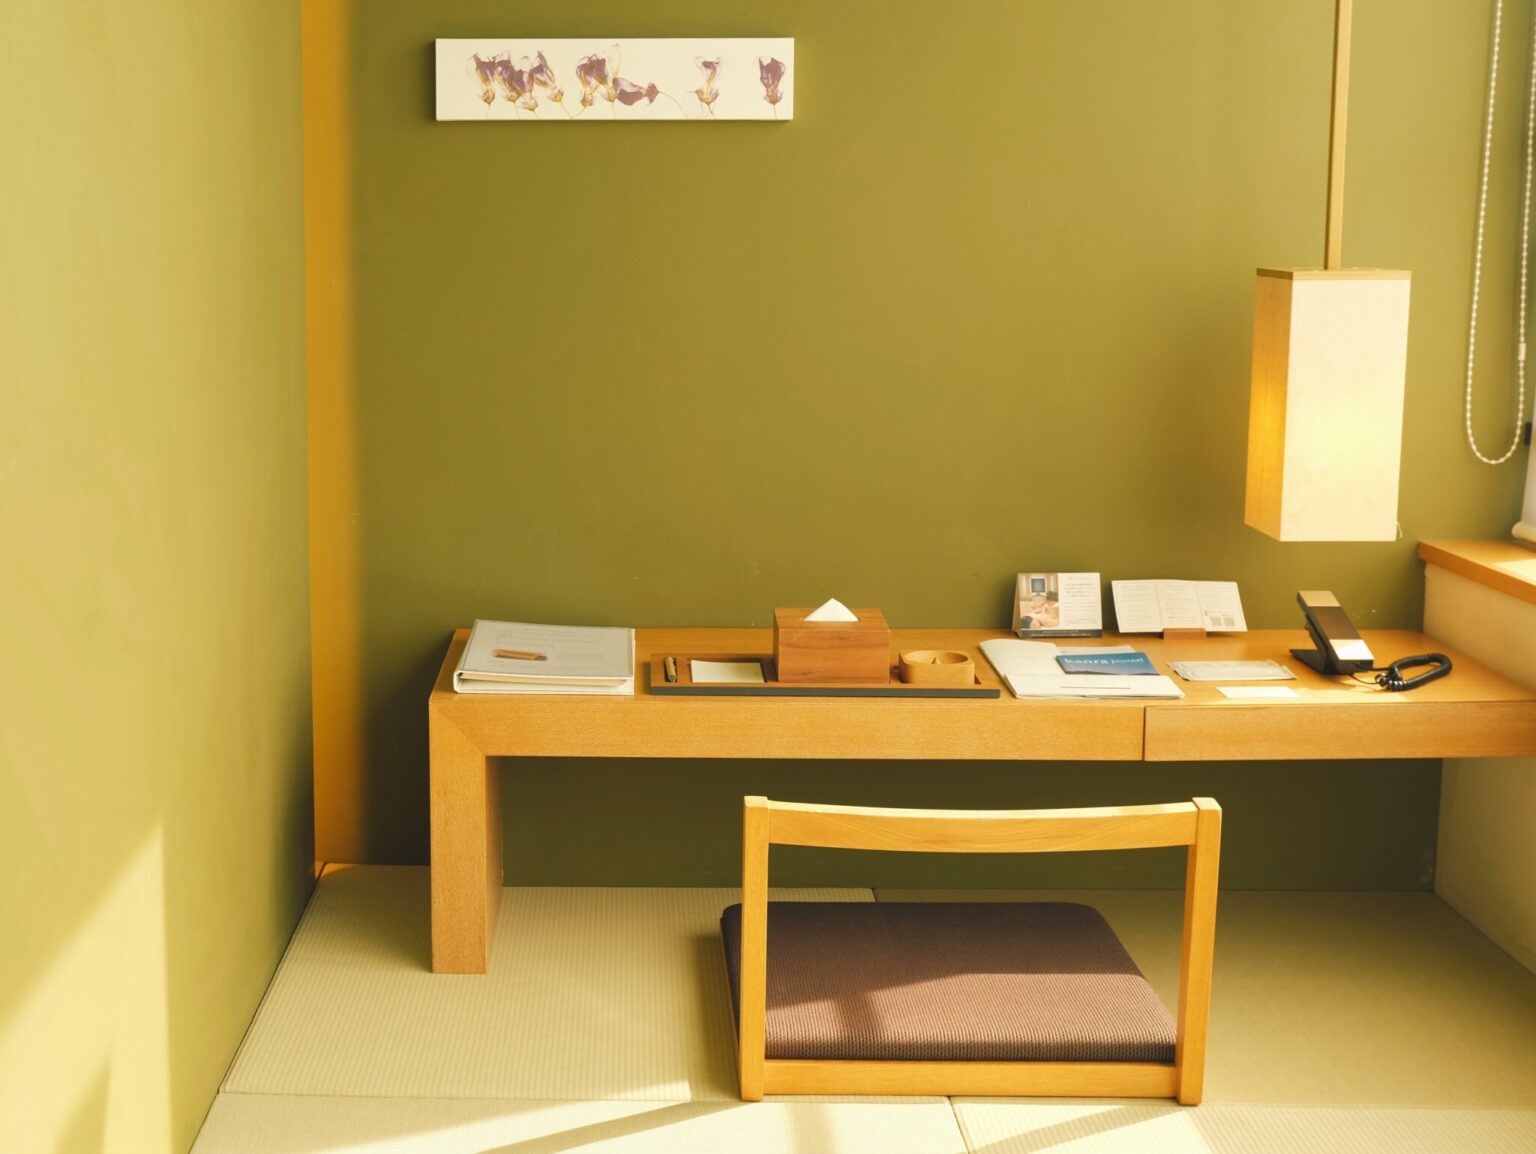 【別邸 ダブルルーム】執筆作業が捗りそうな和室タイプの書斎スペースが印象的。